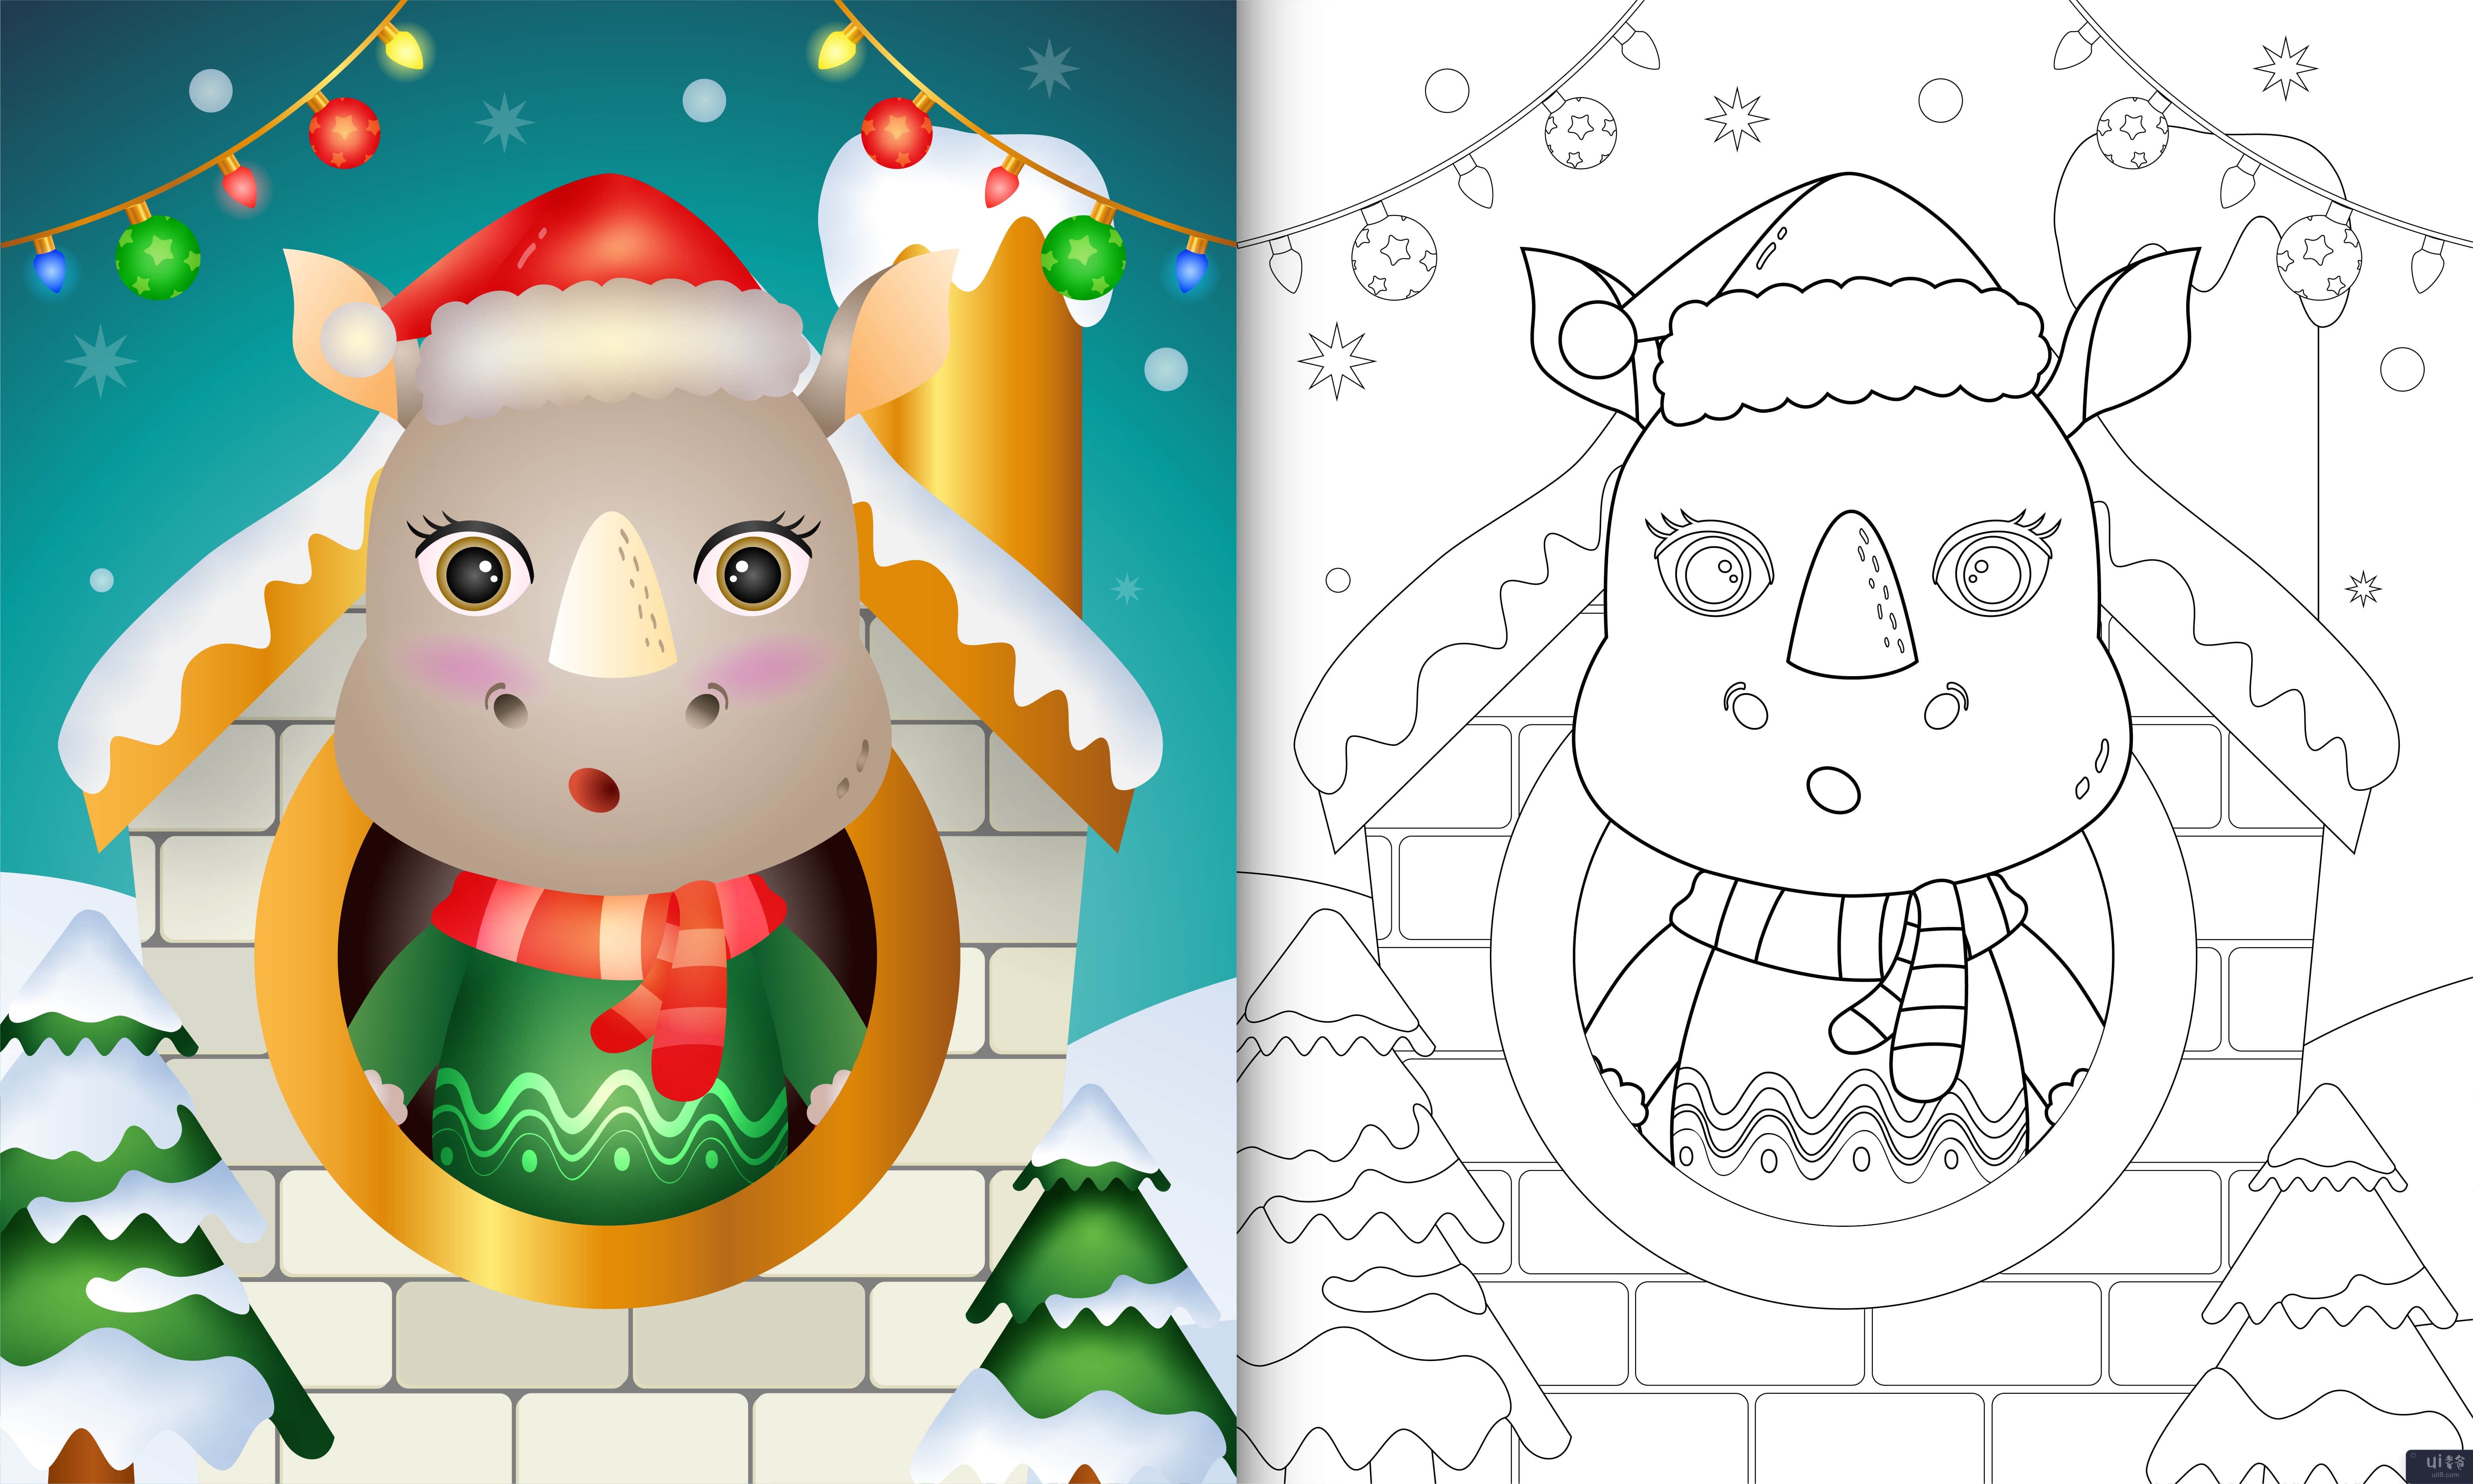 用圣诞帽和围巾为可爱的犀牛圣诞人物着色书(coloring book with a cute rhino christmas characters using santa hat and scarf)插图2